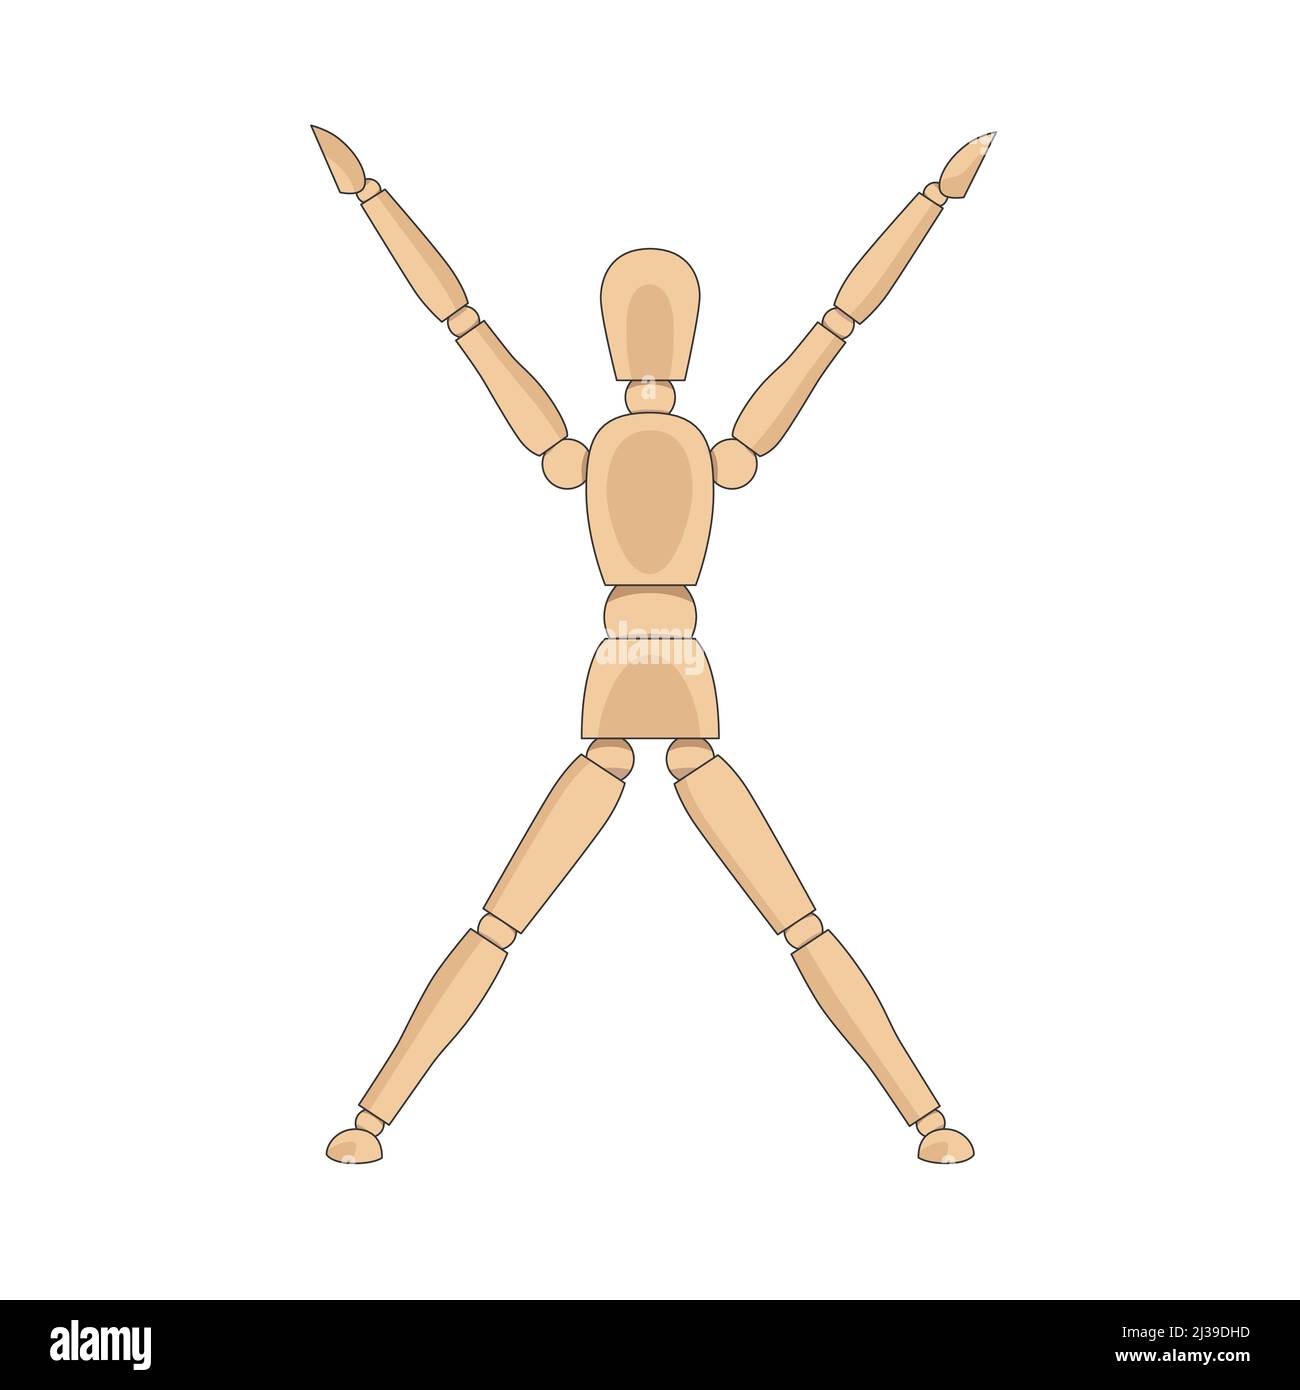 Modello uomo in legno, manichino per disegnare il corpo umano jumping jacks o stella posa. Mannequin controllo fittizio figura vettore semplice illustrazione stock immagine Illustrazione Vettoriale